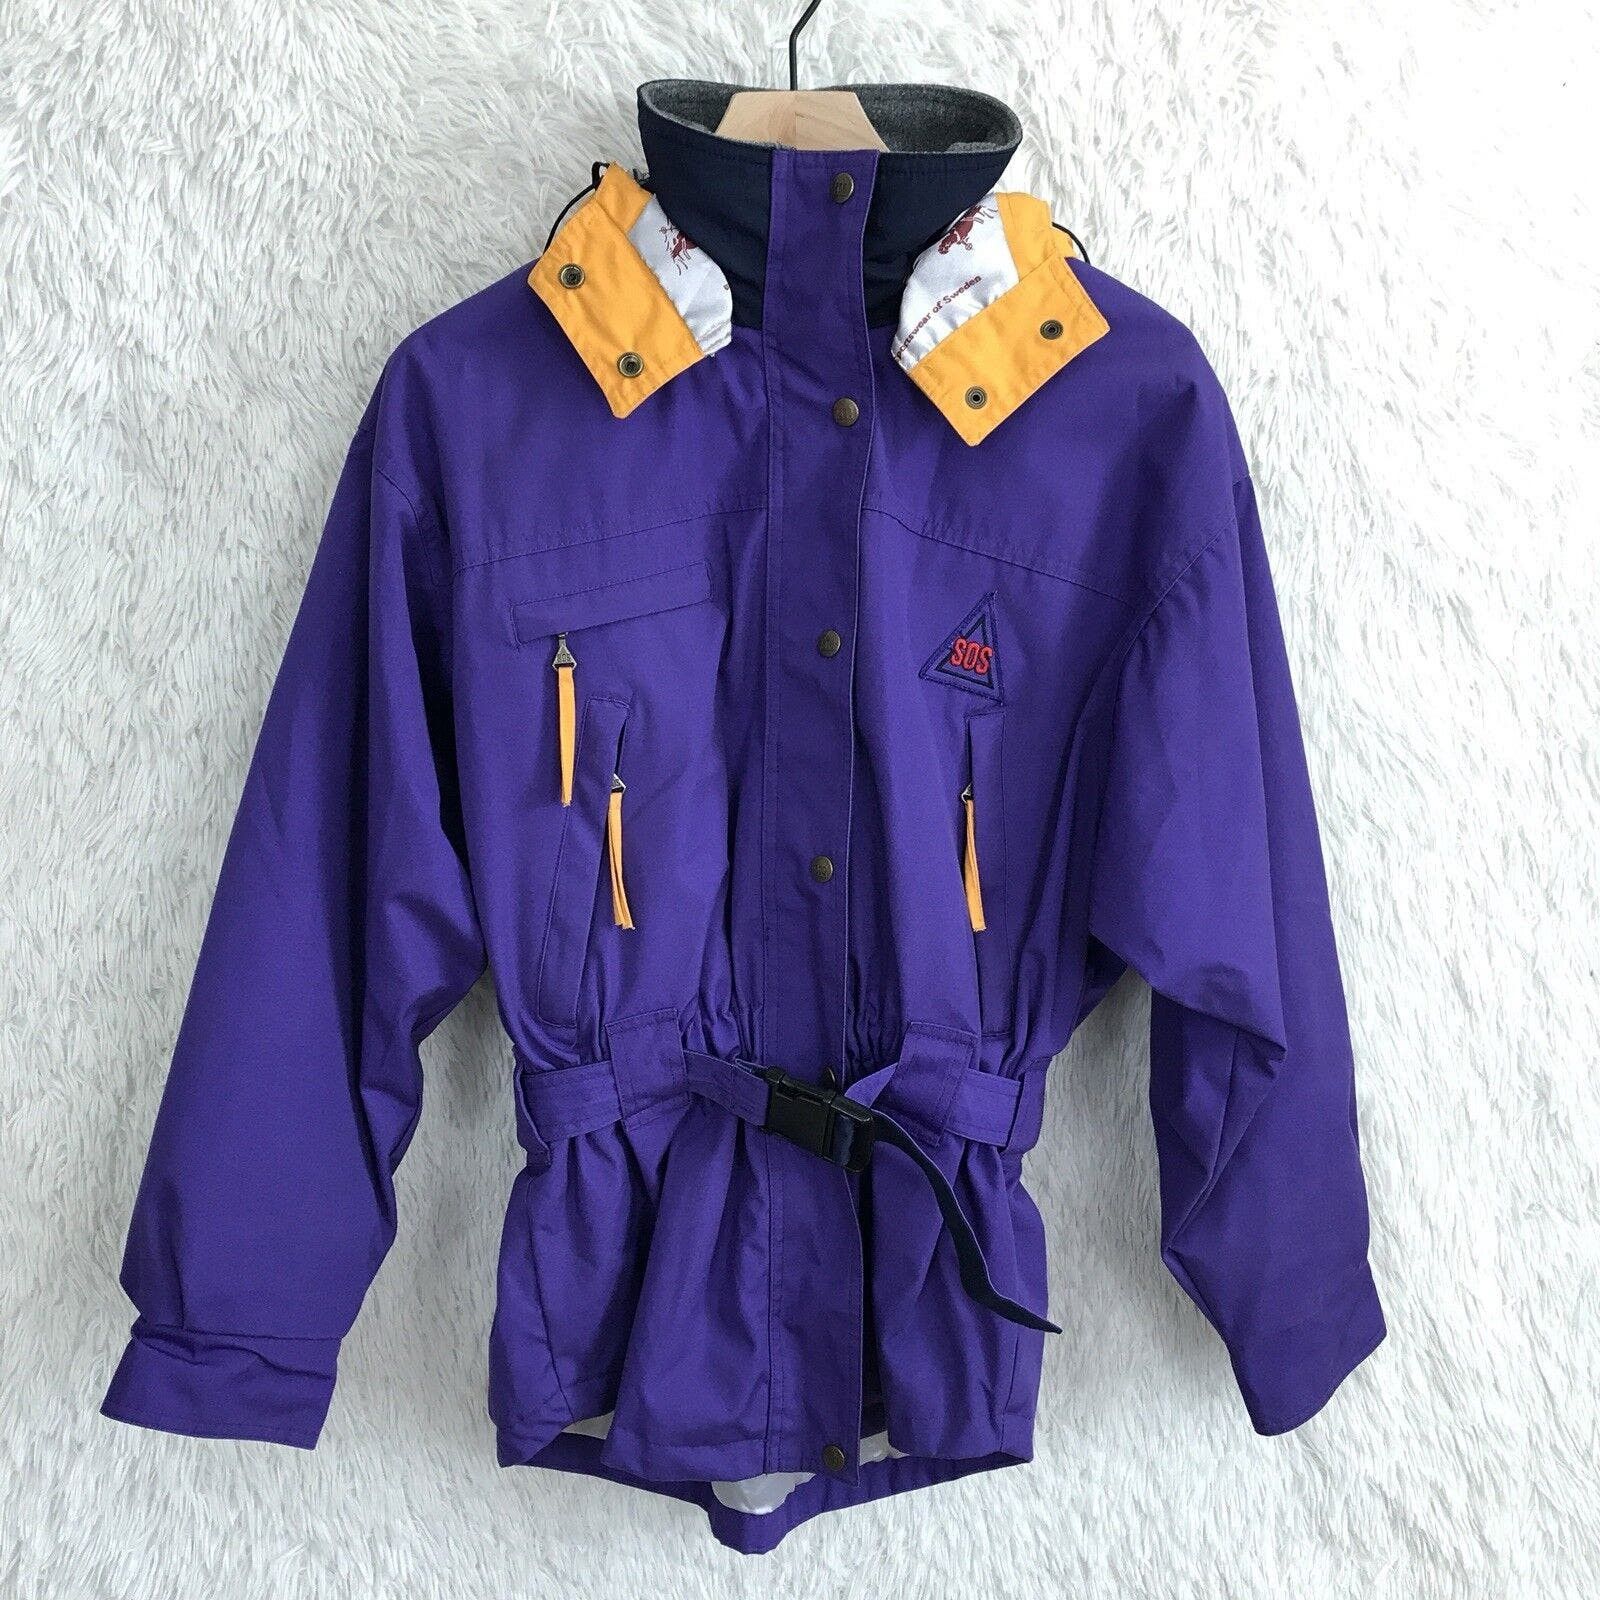 Vintage SOS Sportswear of Sweden Mens Ski Jacket 90s Size M Hooded